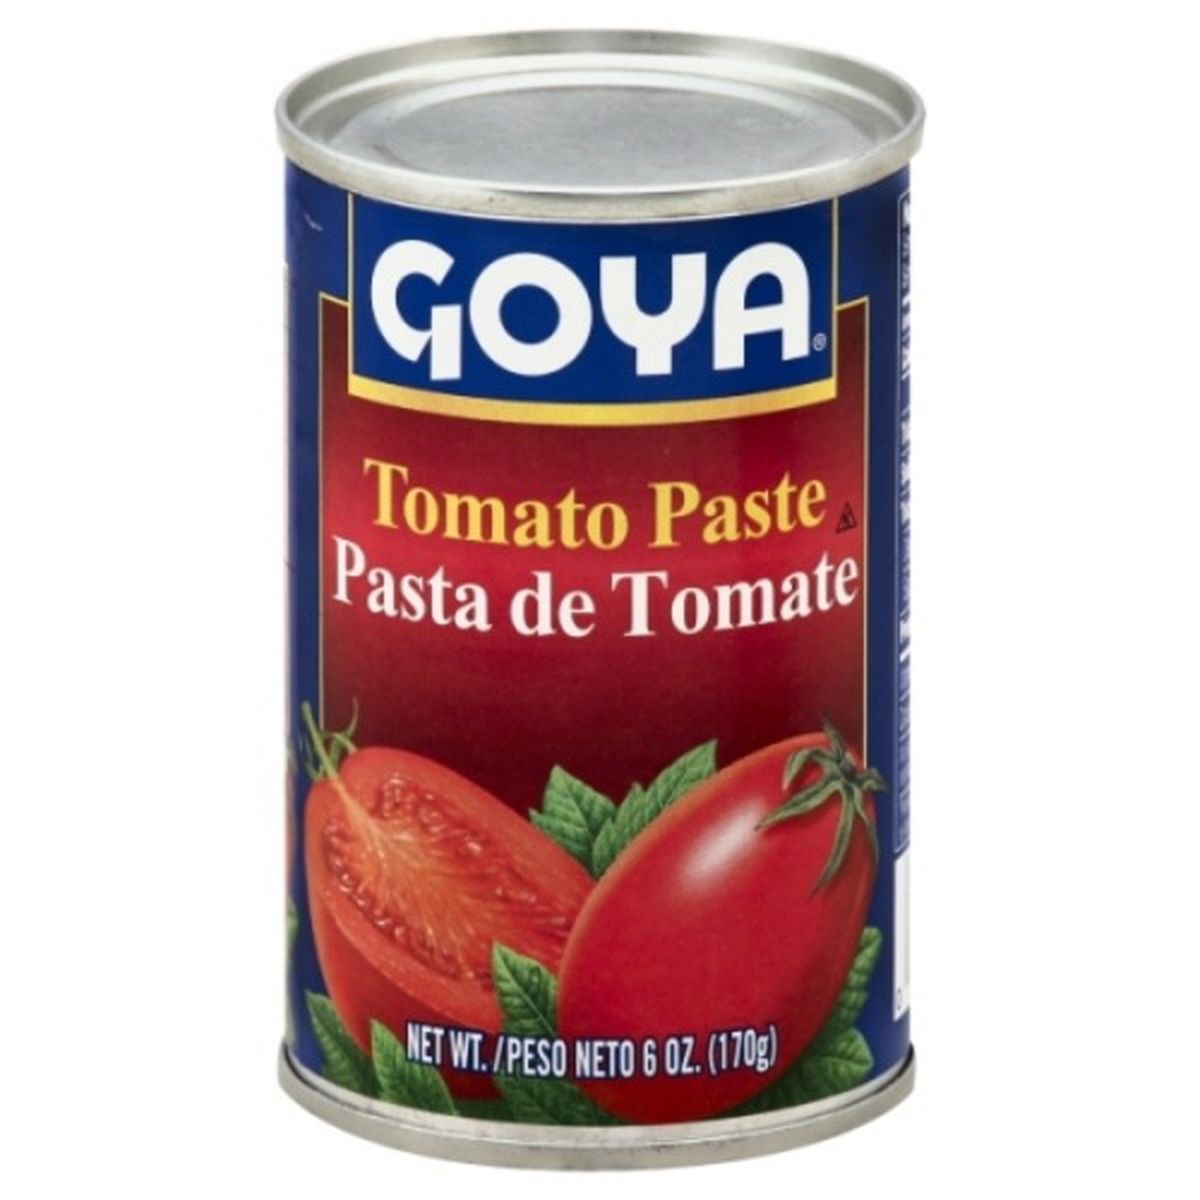 Calories in Goya Tomato Paste